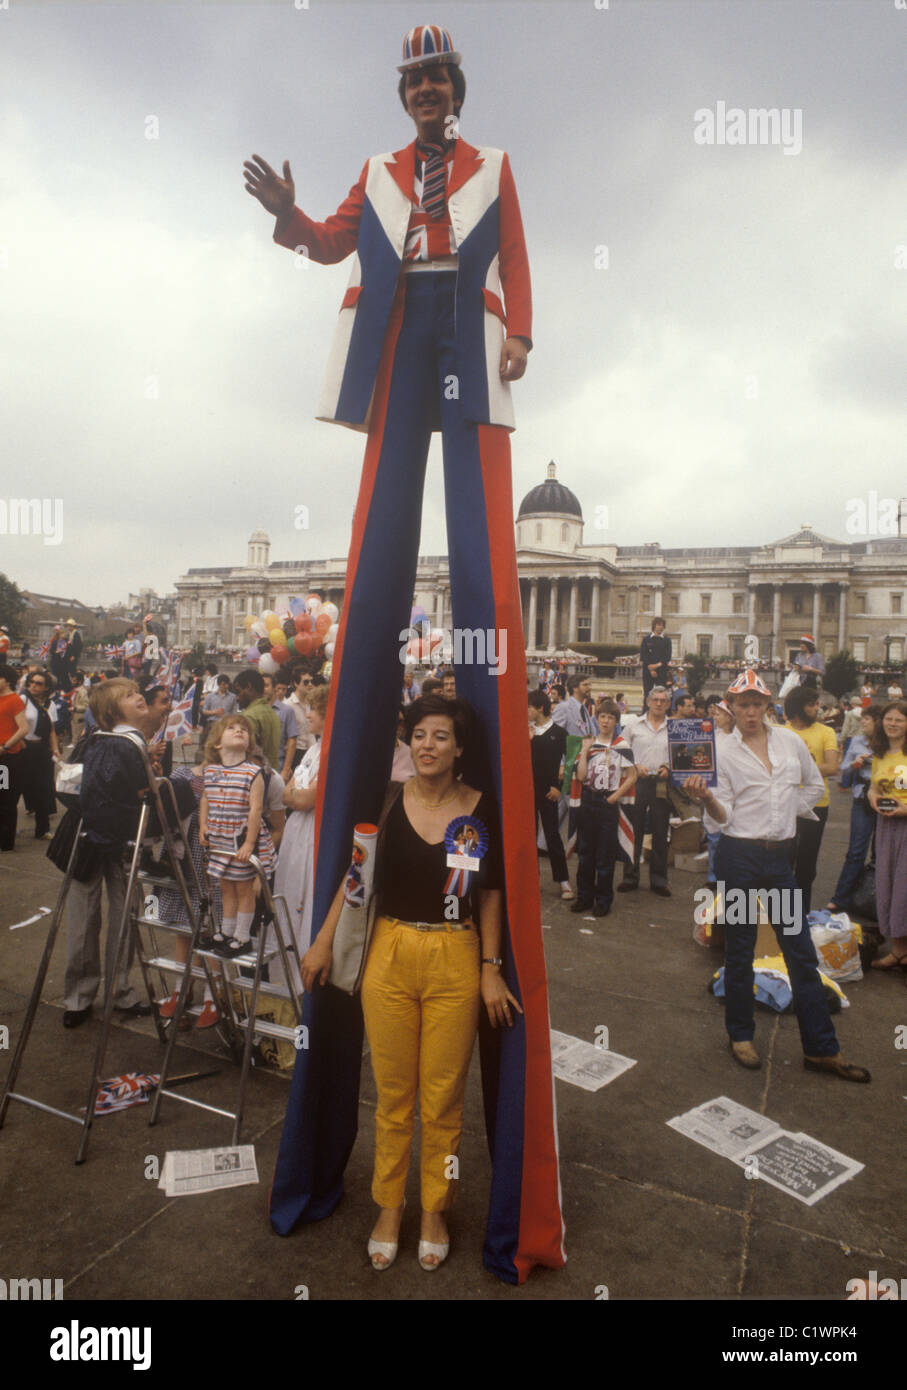 Matrimonio reale del principe Carlo e di Lady Diana Spencer Trafalgar Square uomo patriottico che utilizza palafitte per vedere la folla. Bambini sulle scale che cercano di vedere anche la processione. Luglio 1981 1980 nel Regno Unito HOMER SYKES Foto Stock